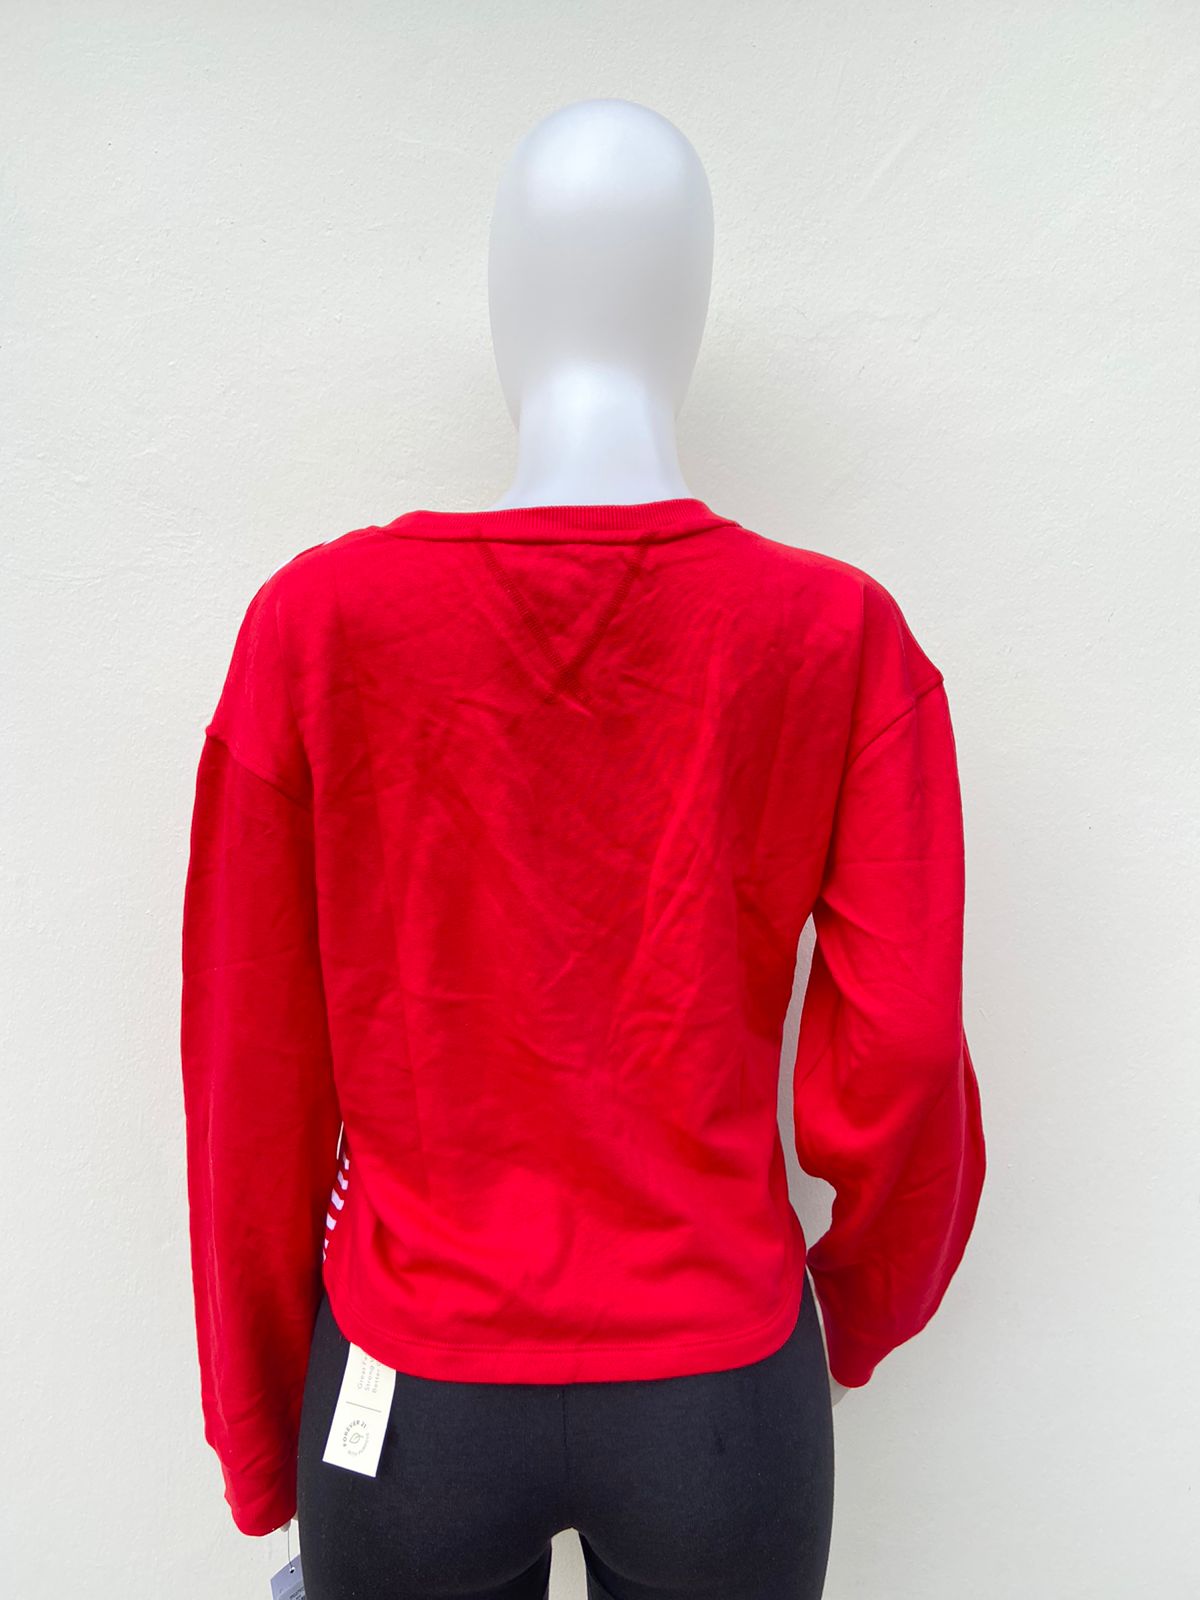 Top / suéter Tommy Hilfiger original color rojo rayas blancas y pequeño logo tipo de la marca.